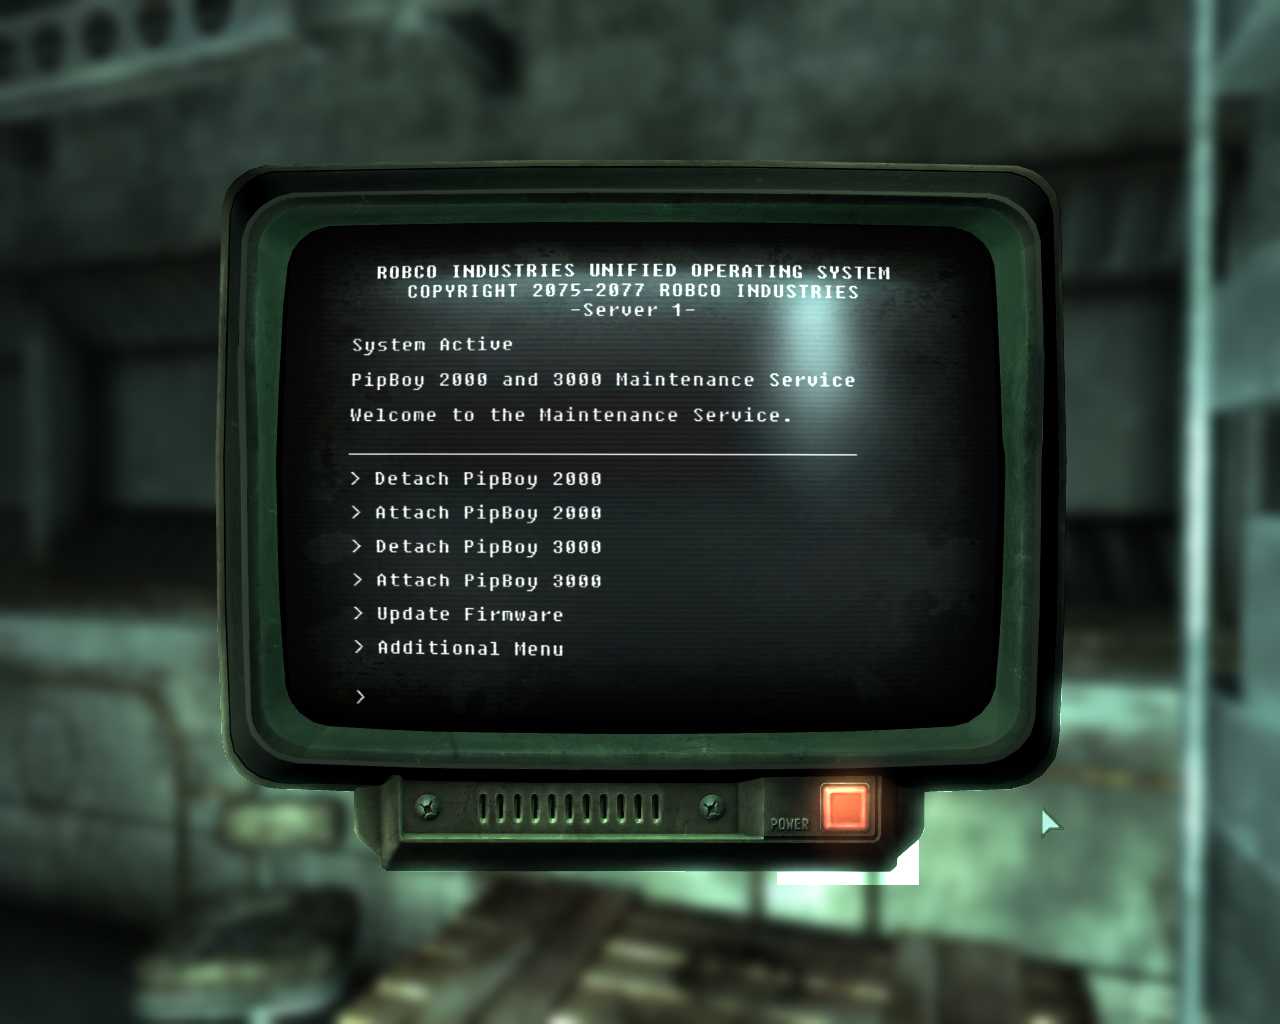 Чит-коды на fallout 4: консольные команды